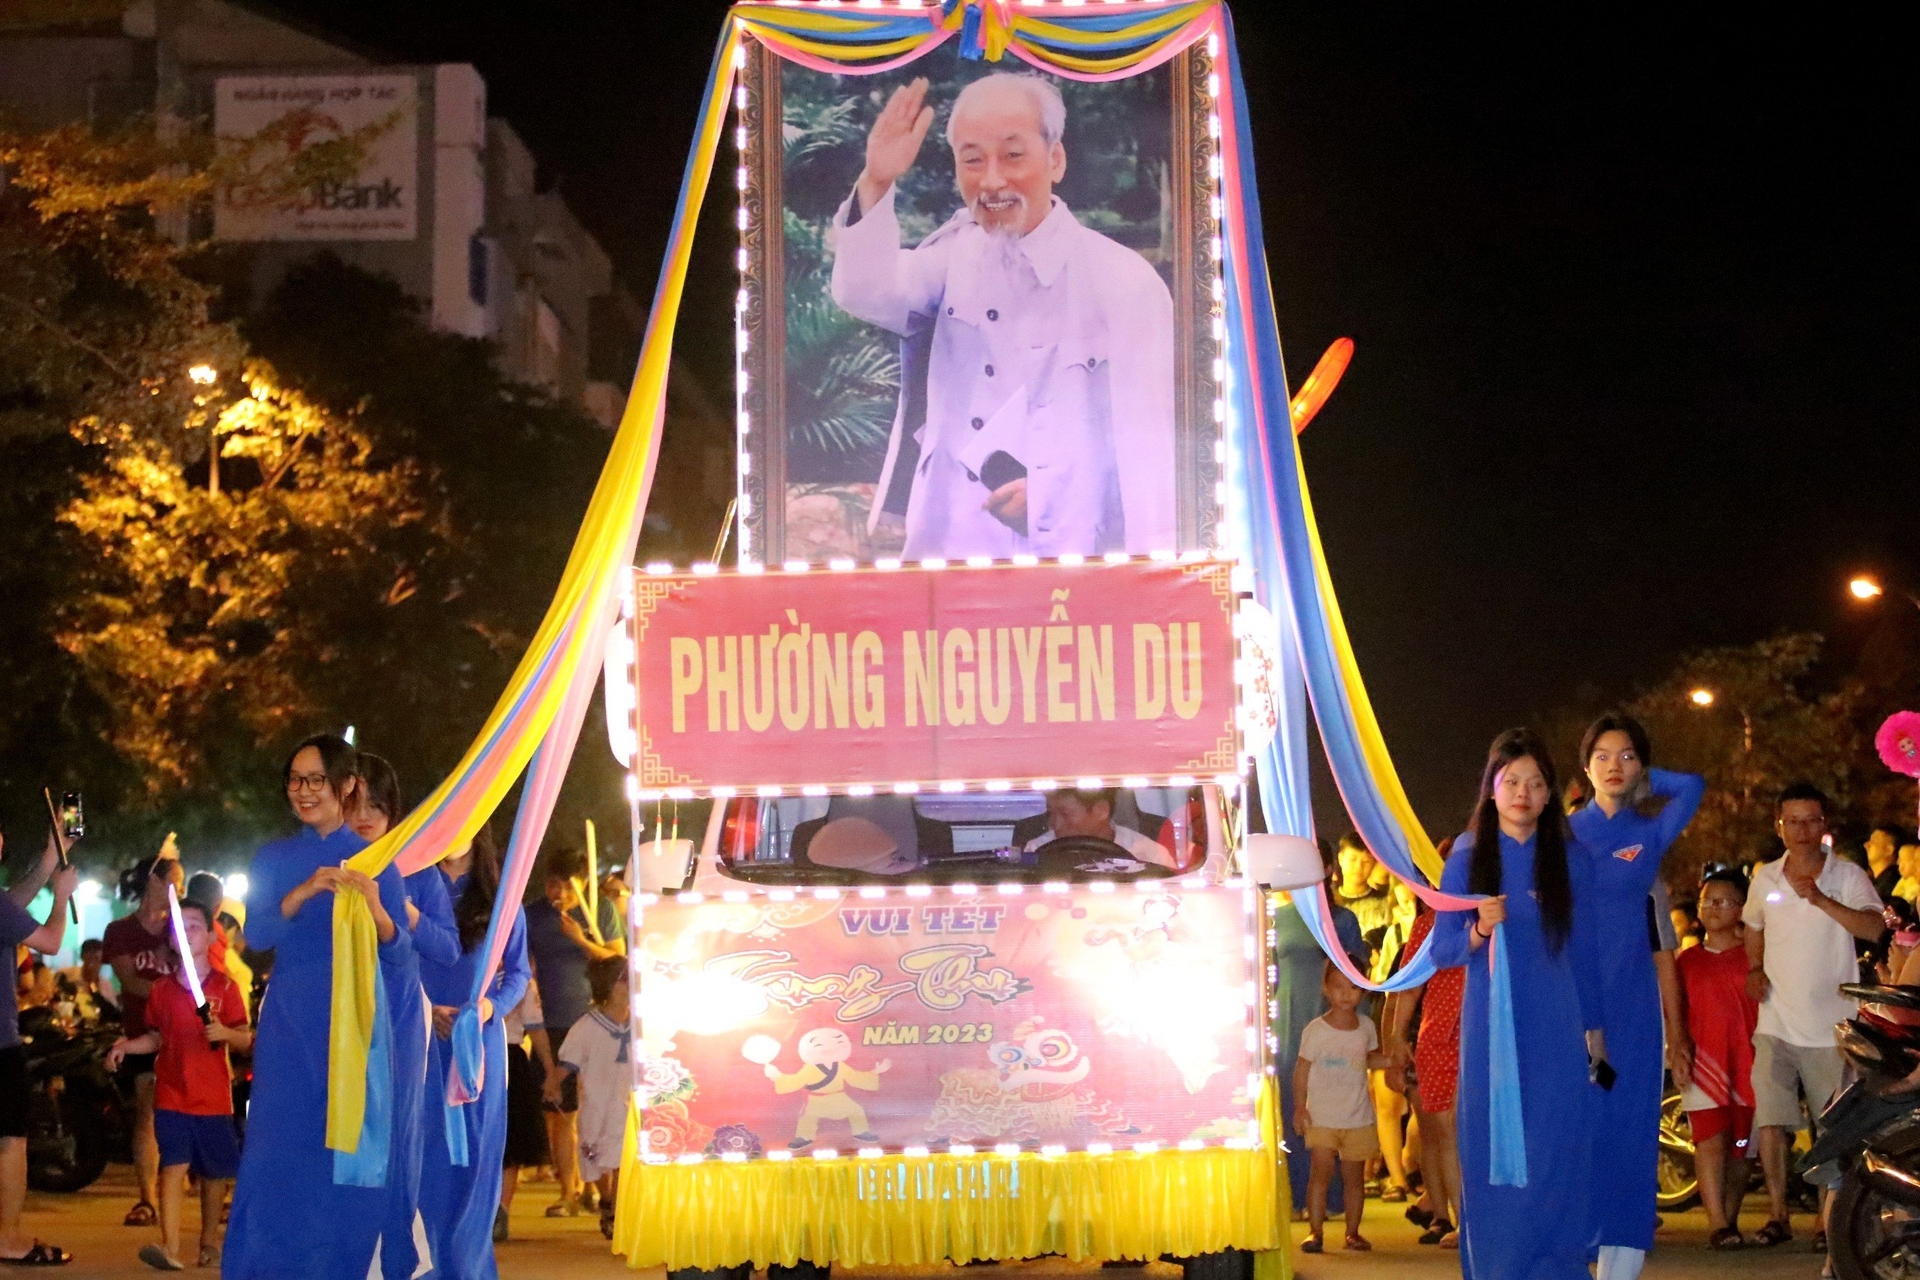 'Chúng tôi mong muốn từ thành công của phường Nguyễn Du, lễ hội rước đèn Trung thu sẽ lan tỏa đến các phường, xã khác trong toàn thành phố. Đồng thời, đặt nền móng định hướng duy trì cho các năm tiếp theo', ông Thắng nói.